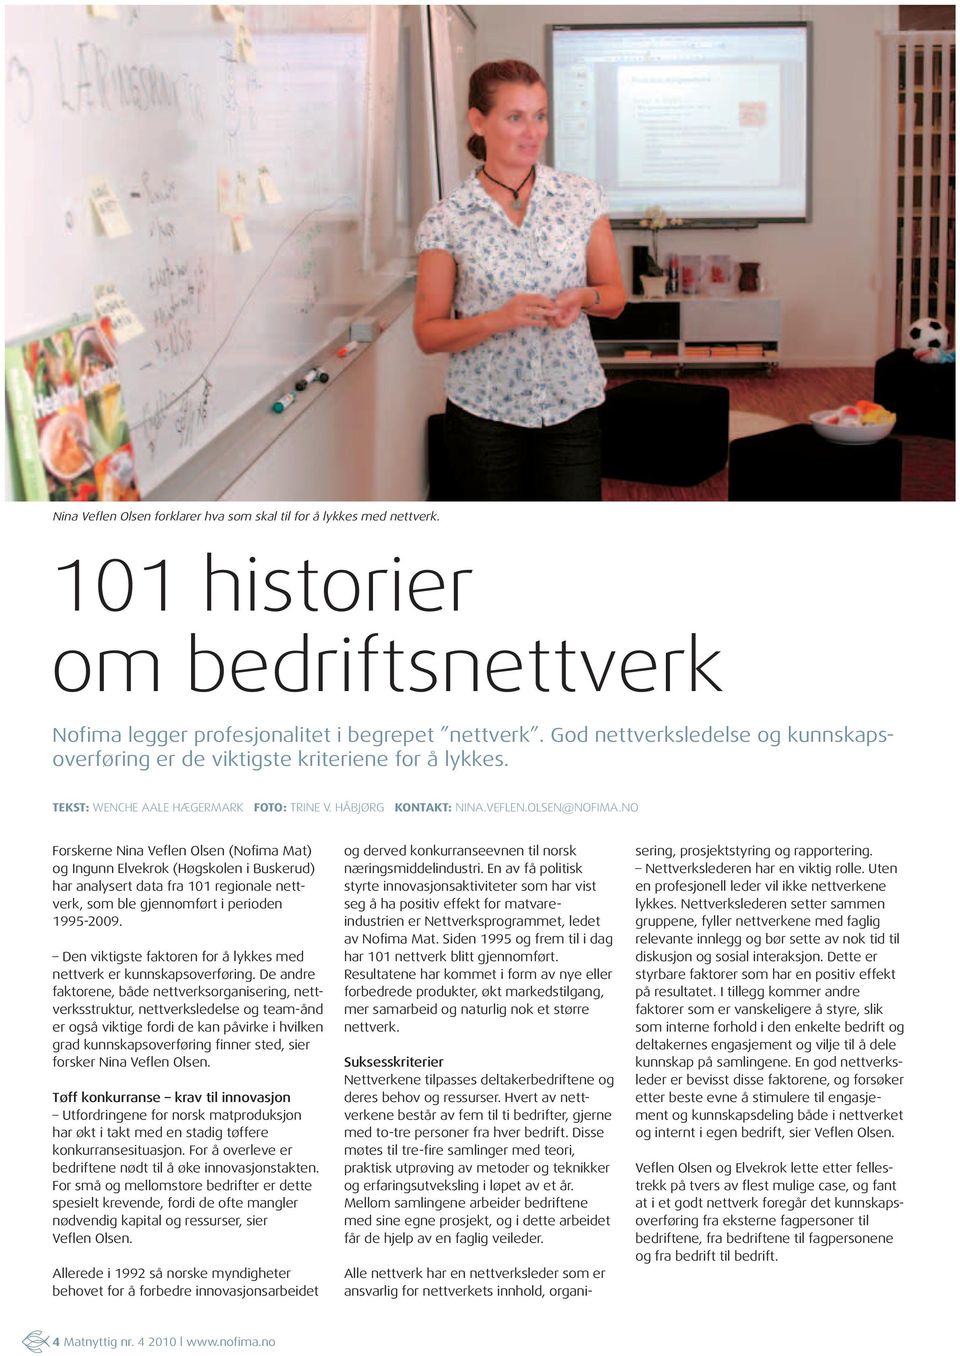 NO Forskerne Nina Veflen Olsen (Nofima Mat) og Ingunn Elvekrok (Høgskolen i Buskerud) har analysert data fra 101 regionale nettverk, som ble gjennomført i perioden 1995-2009.